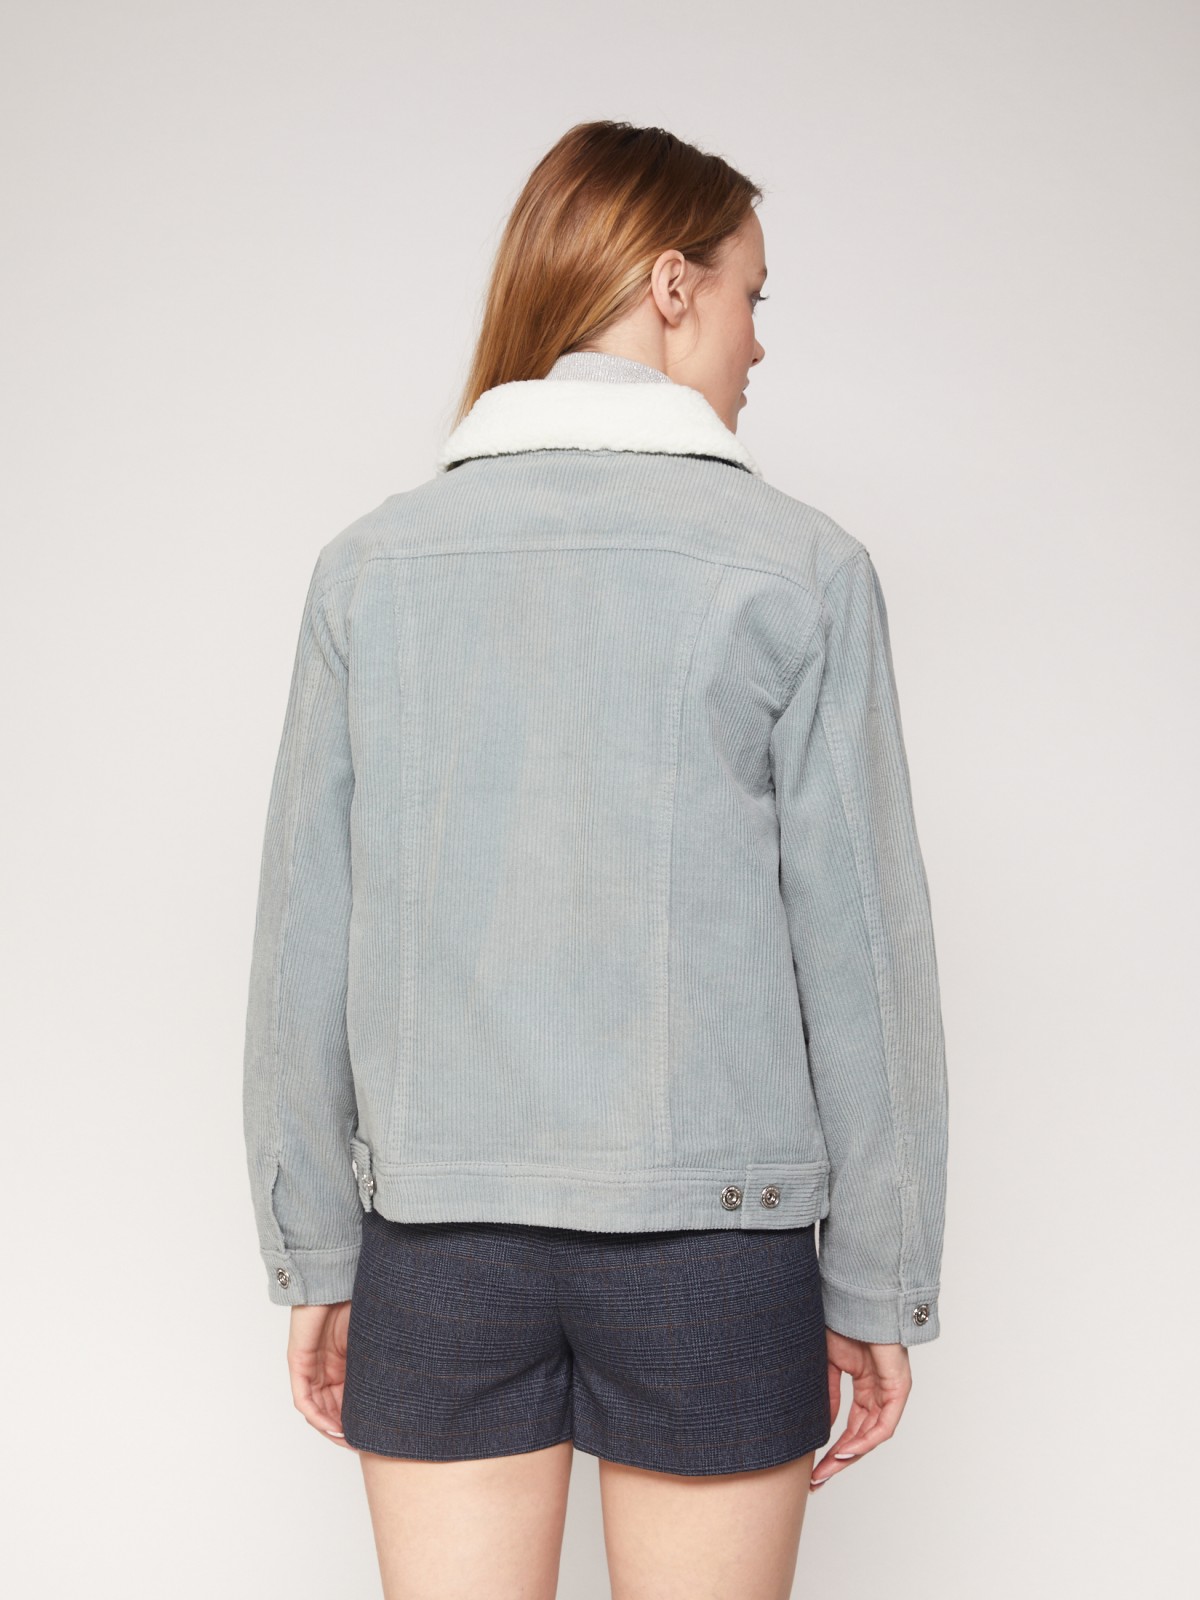 Вельветовая куртка с мягким воротником zolla 021335459013, цвет мятный, размер XS - фото 6